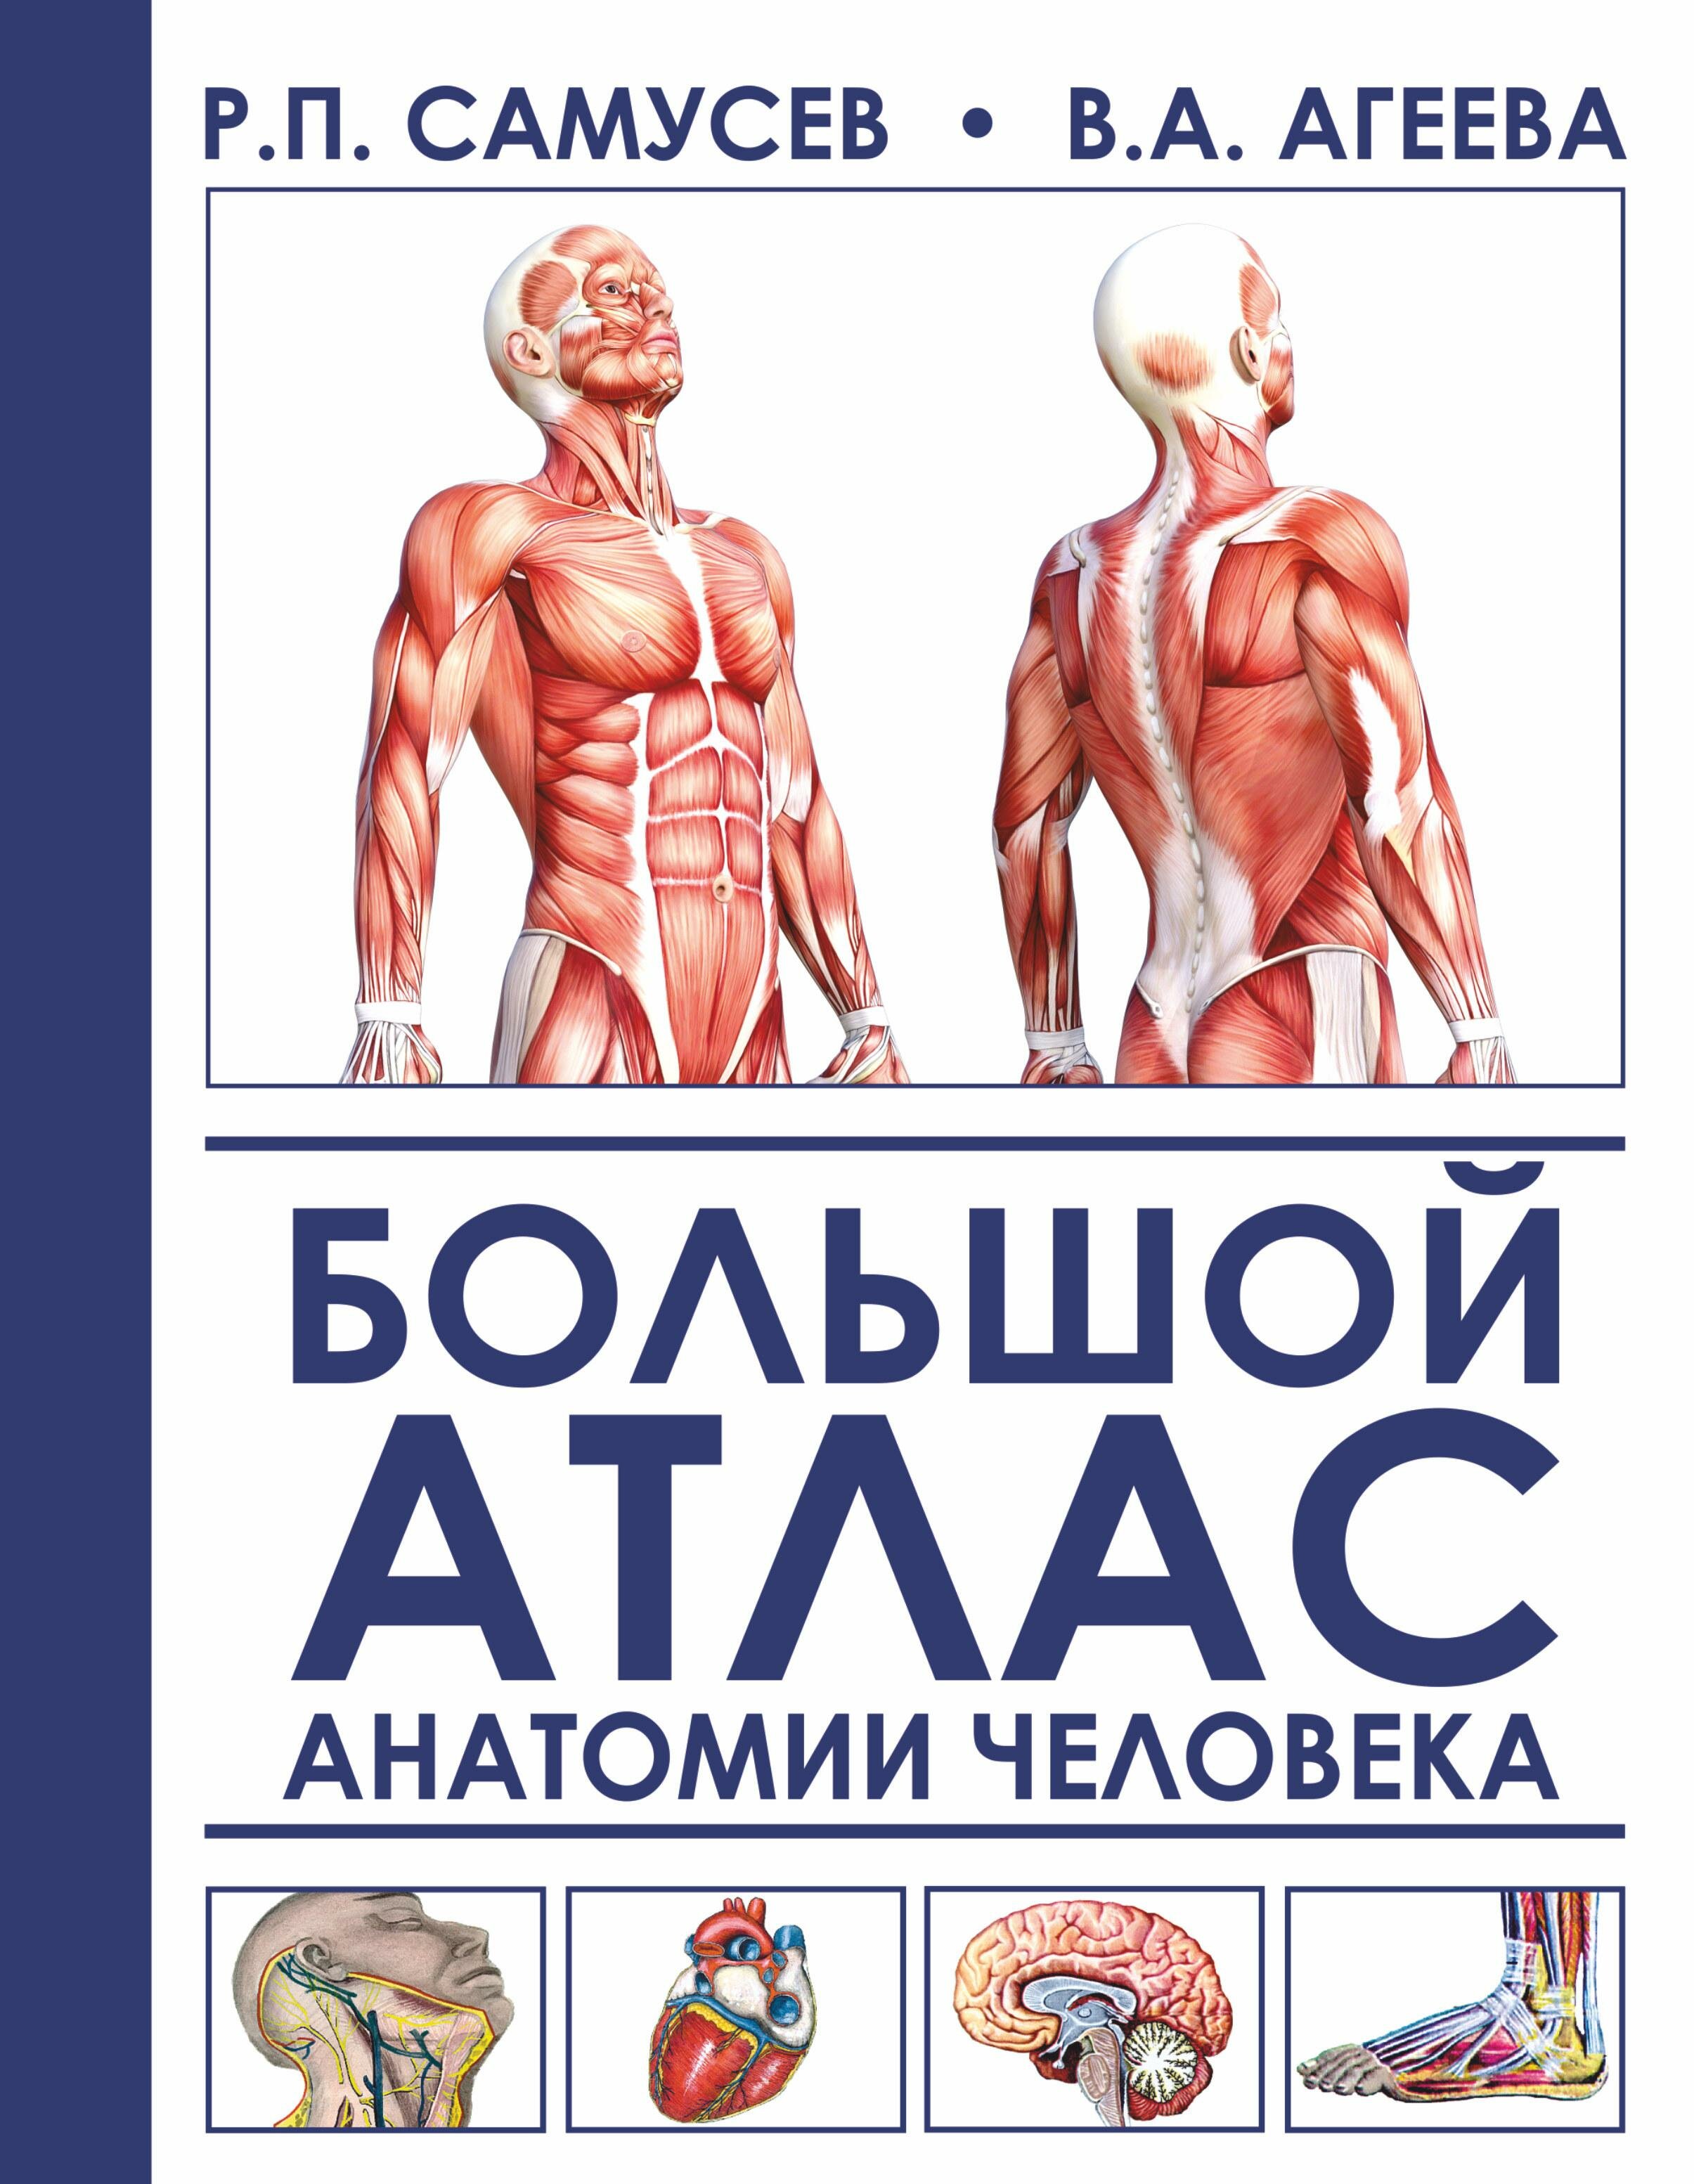 Большой атлас анатомии человека - фото №1